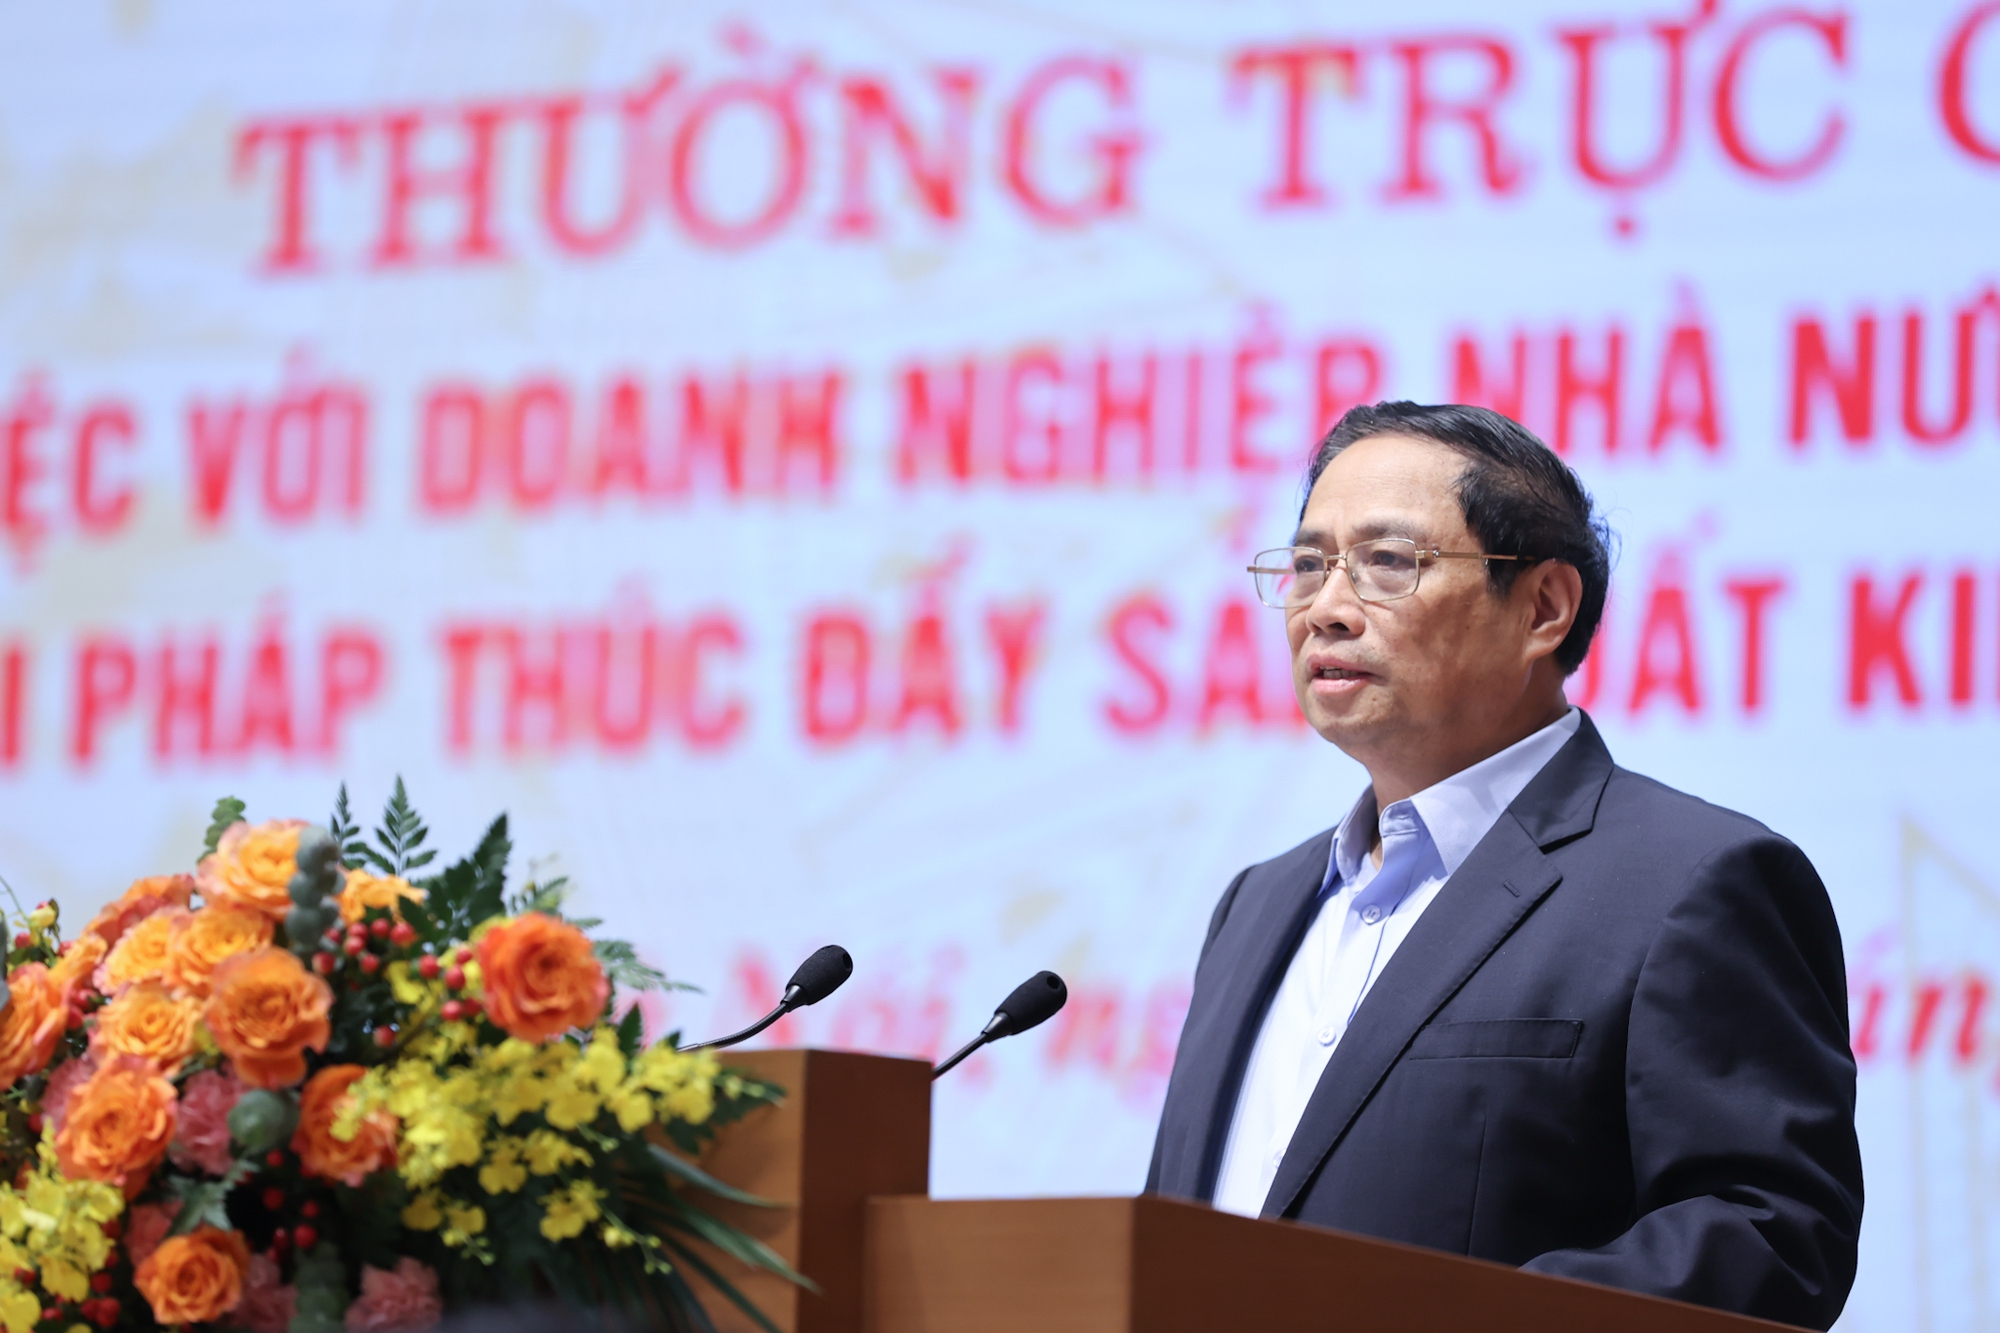 Thủ tướng Phạm Minh Chính nhấn mạnh 6 quan điểm chỉ đạo điều hành để tiếp tục để nâng cao hiệu quả hoạt động, đổi mới khu vực doanh nghiệp nhà nước - Ảnh: VGP/Nhật Bắc